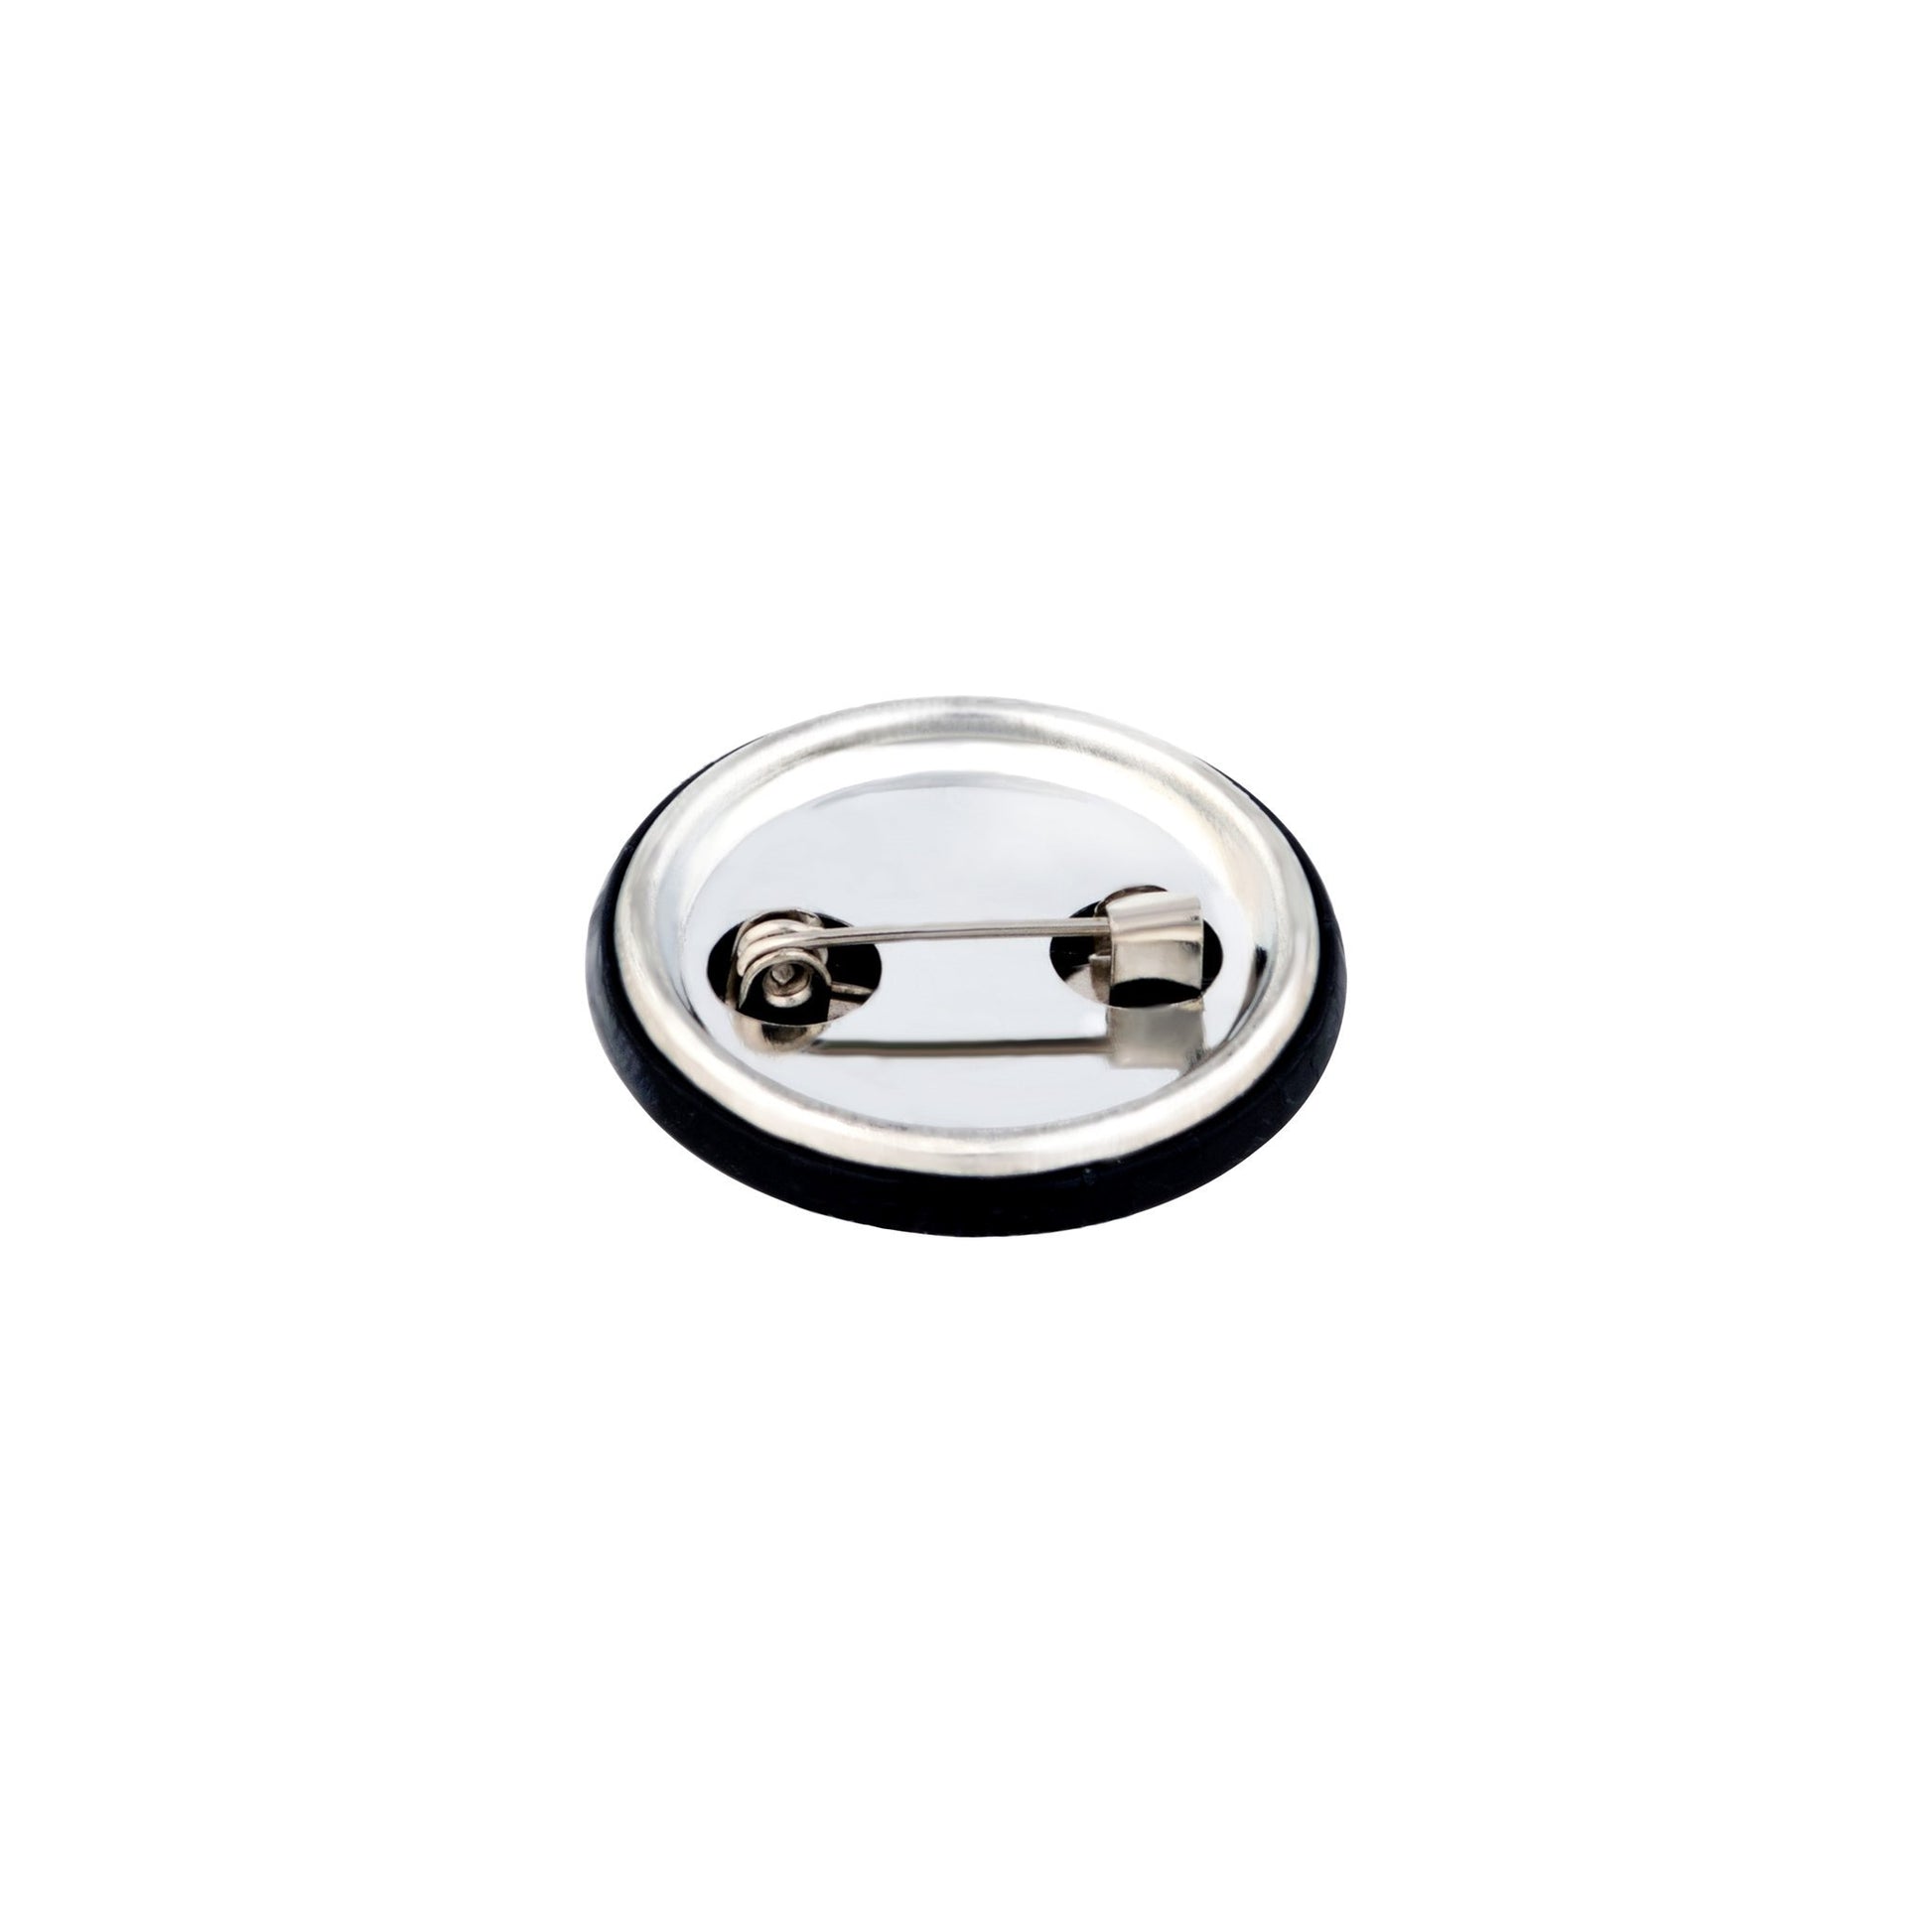 SPYSCAPE Button Badge Set - 